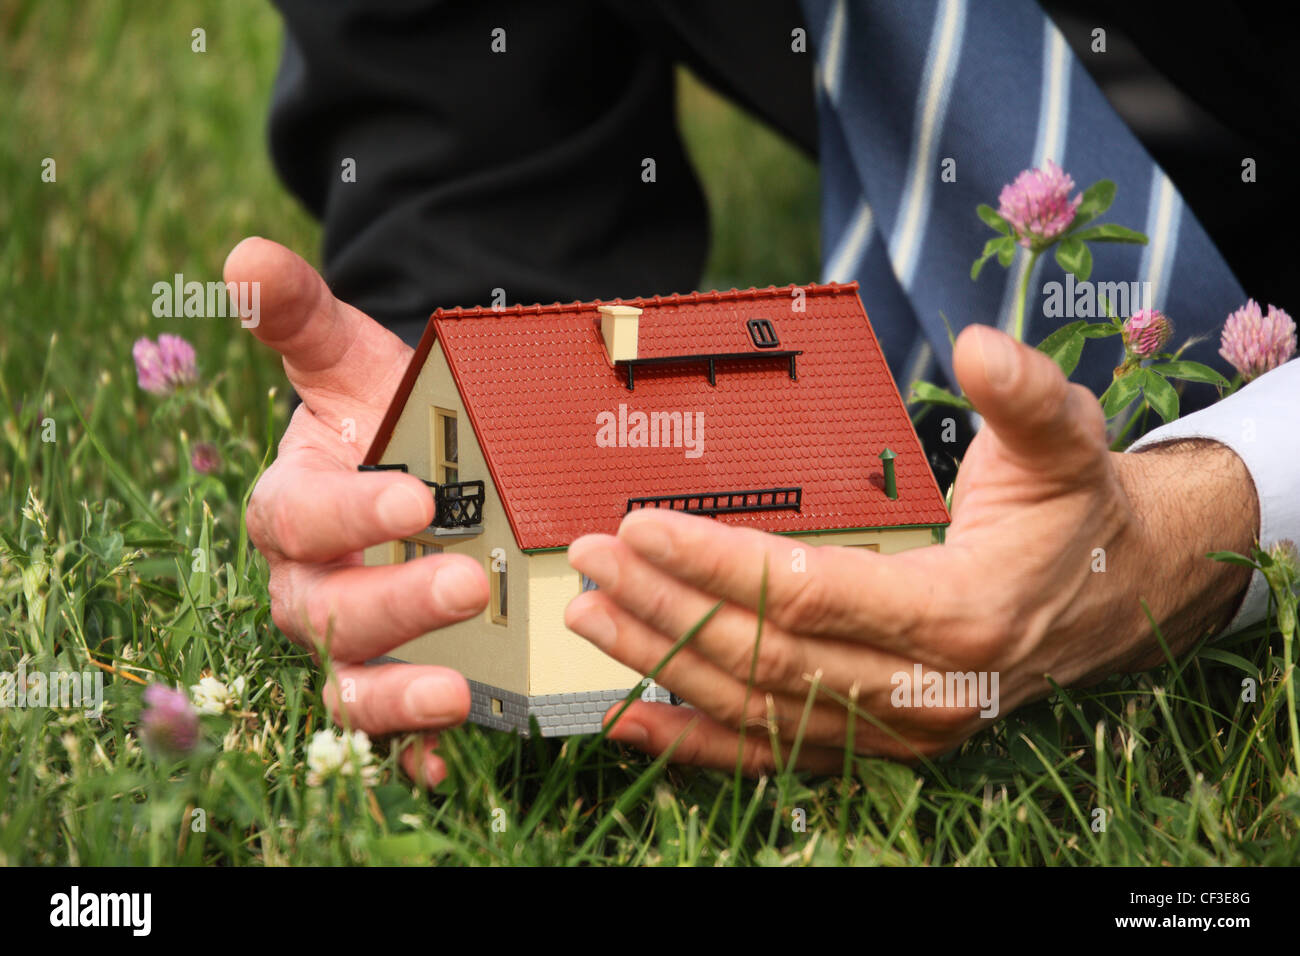 Mani dell'uomo casa azienda miniatura, erba, fiori di trifoglio collage Foto Stock